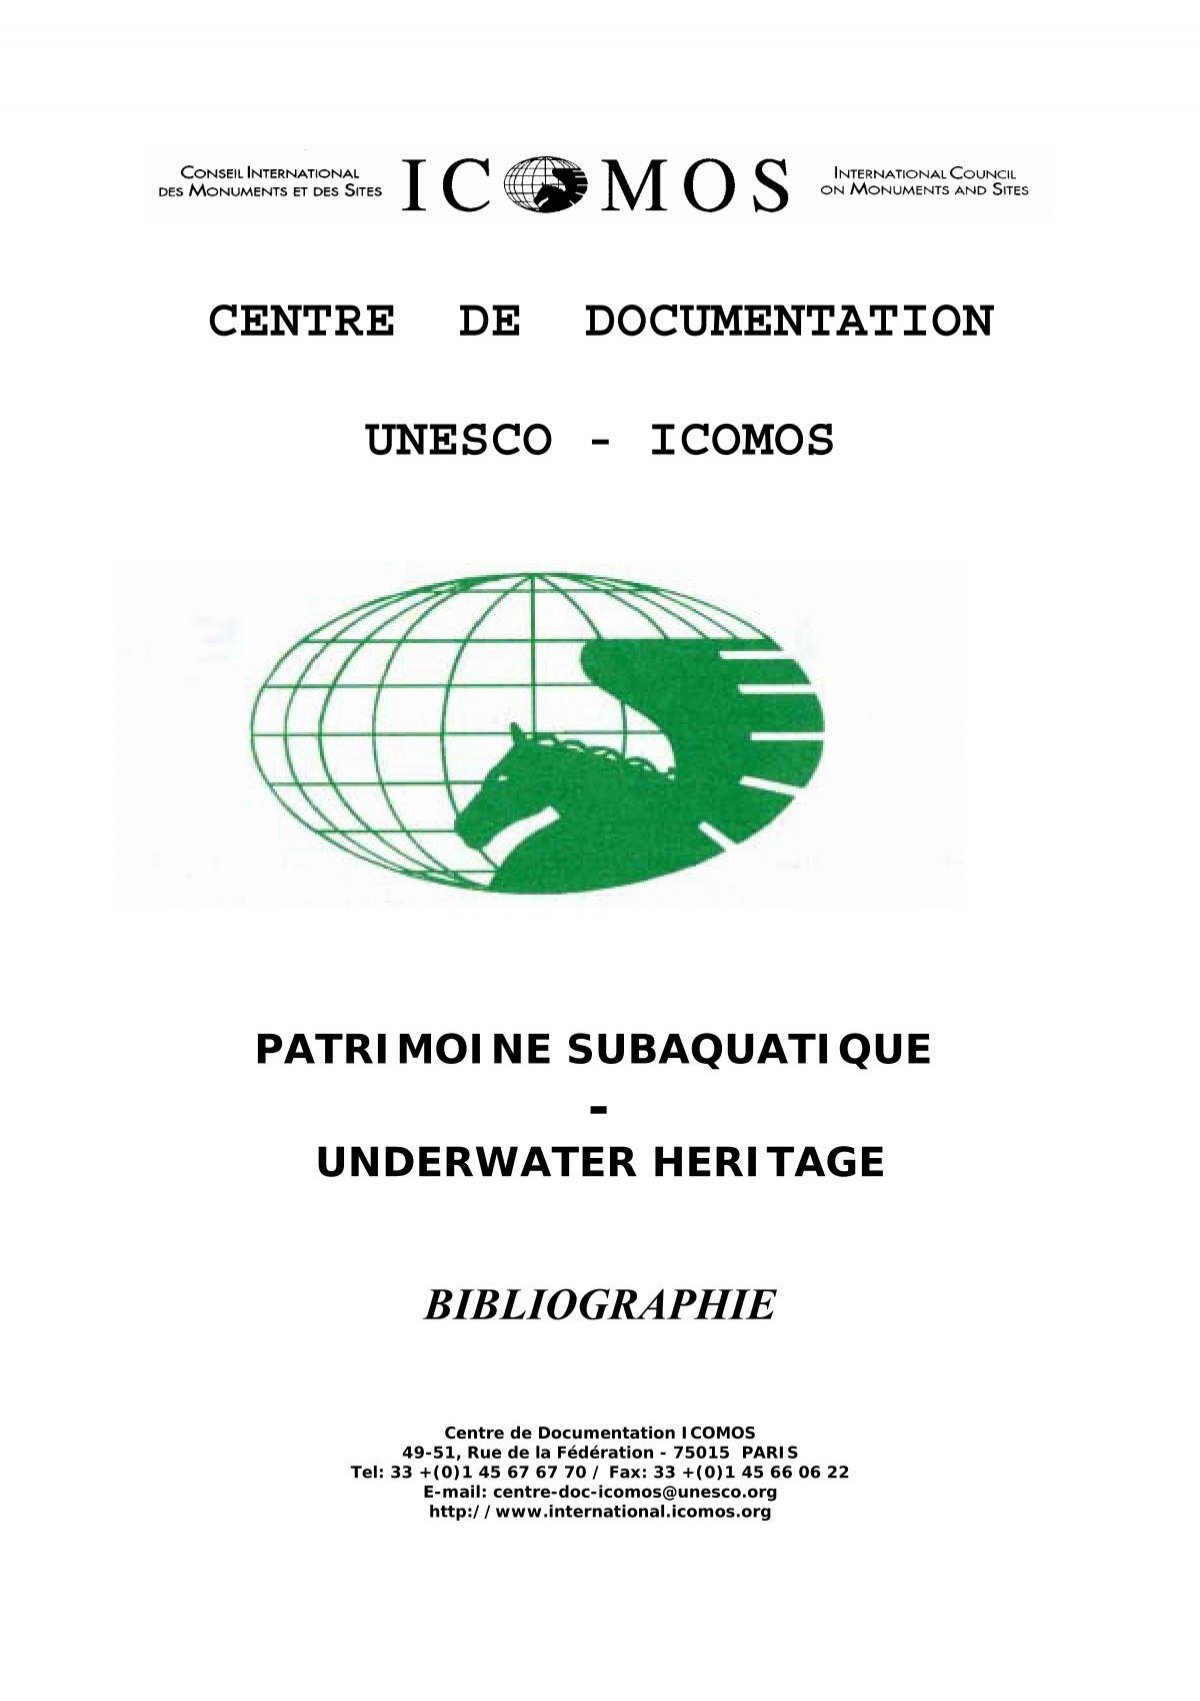 CENTRE DE DOCUMENTATION UNESCO - ICOMOS 